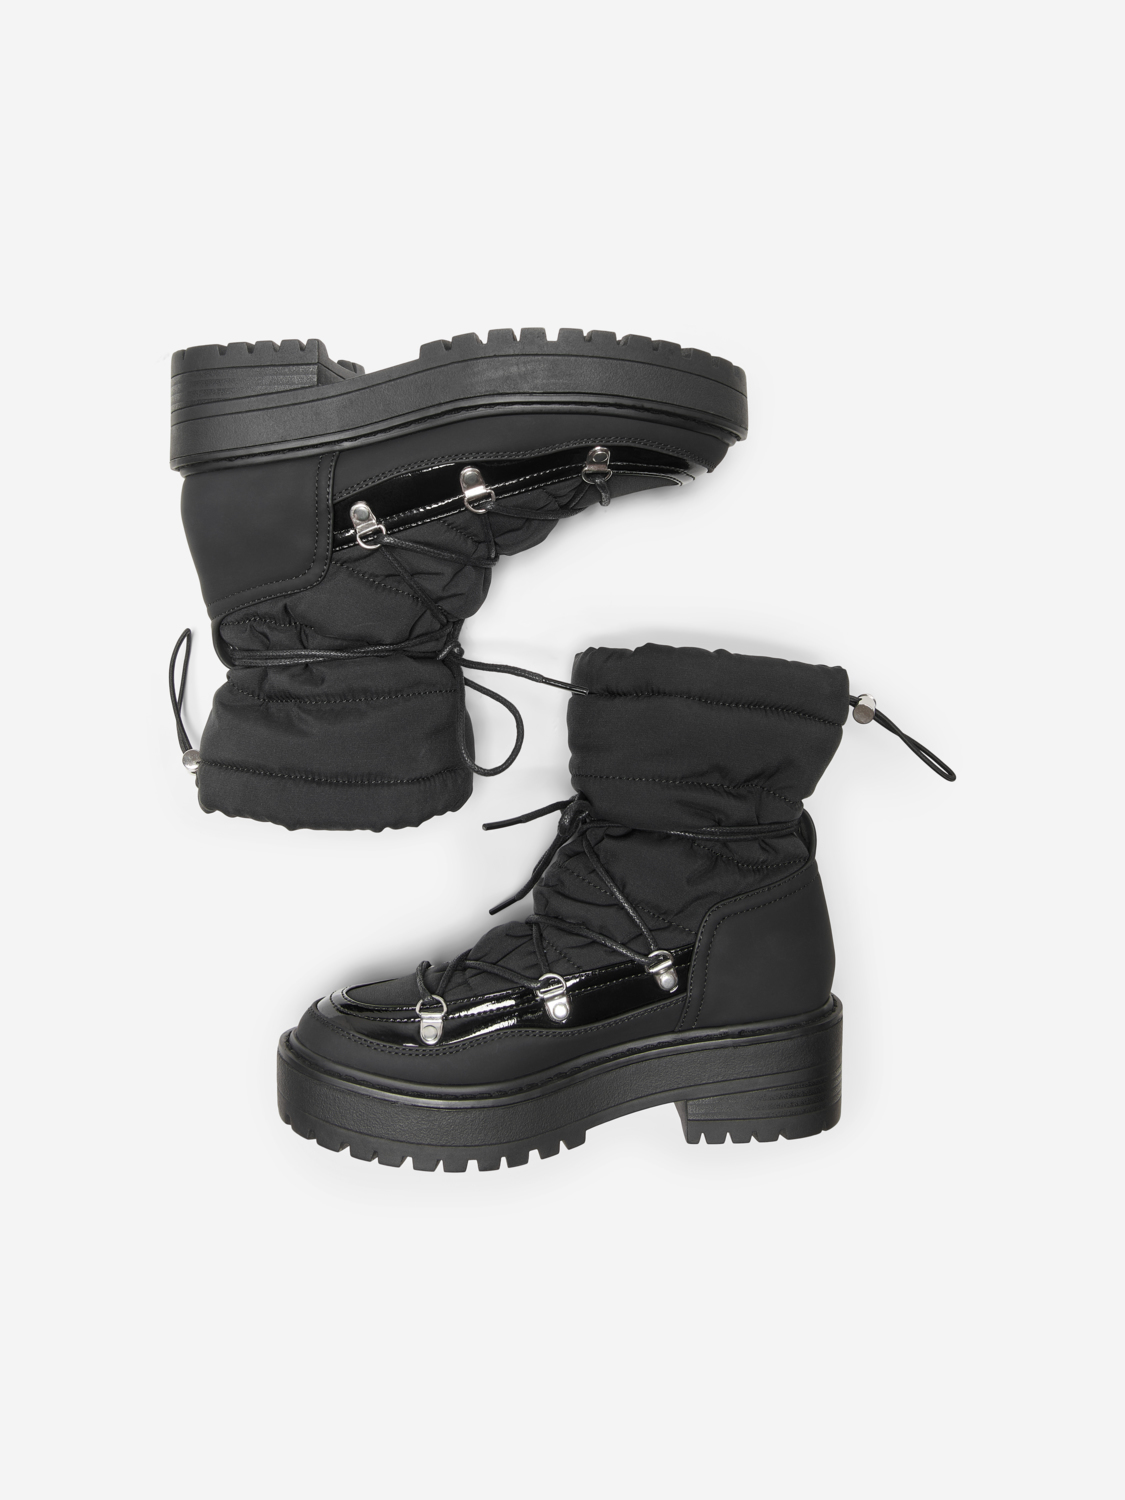 Brandie moon boots, BLACK, large